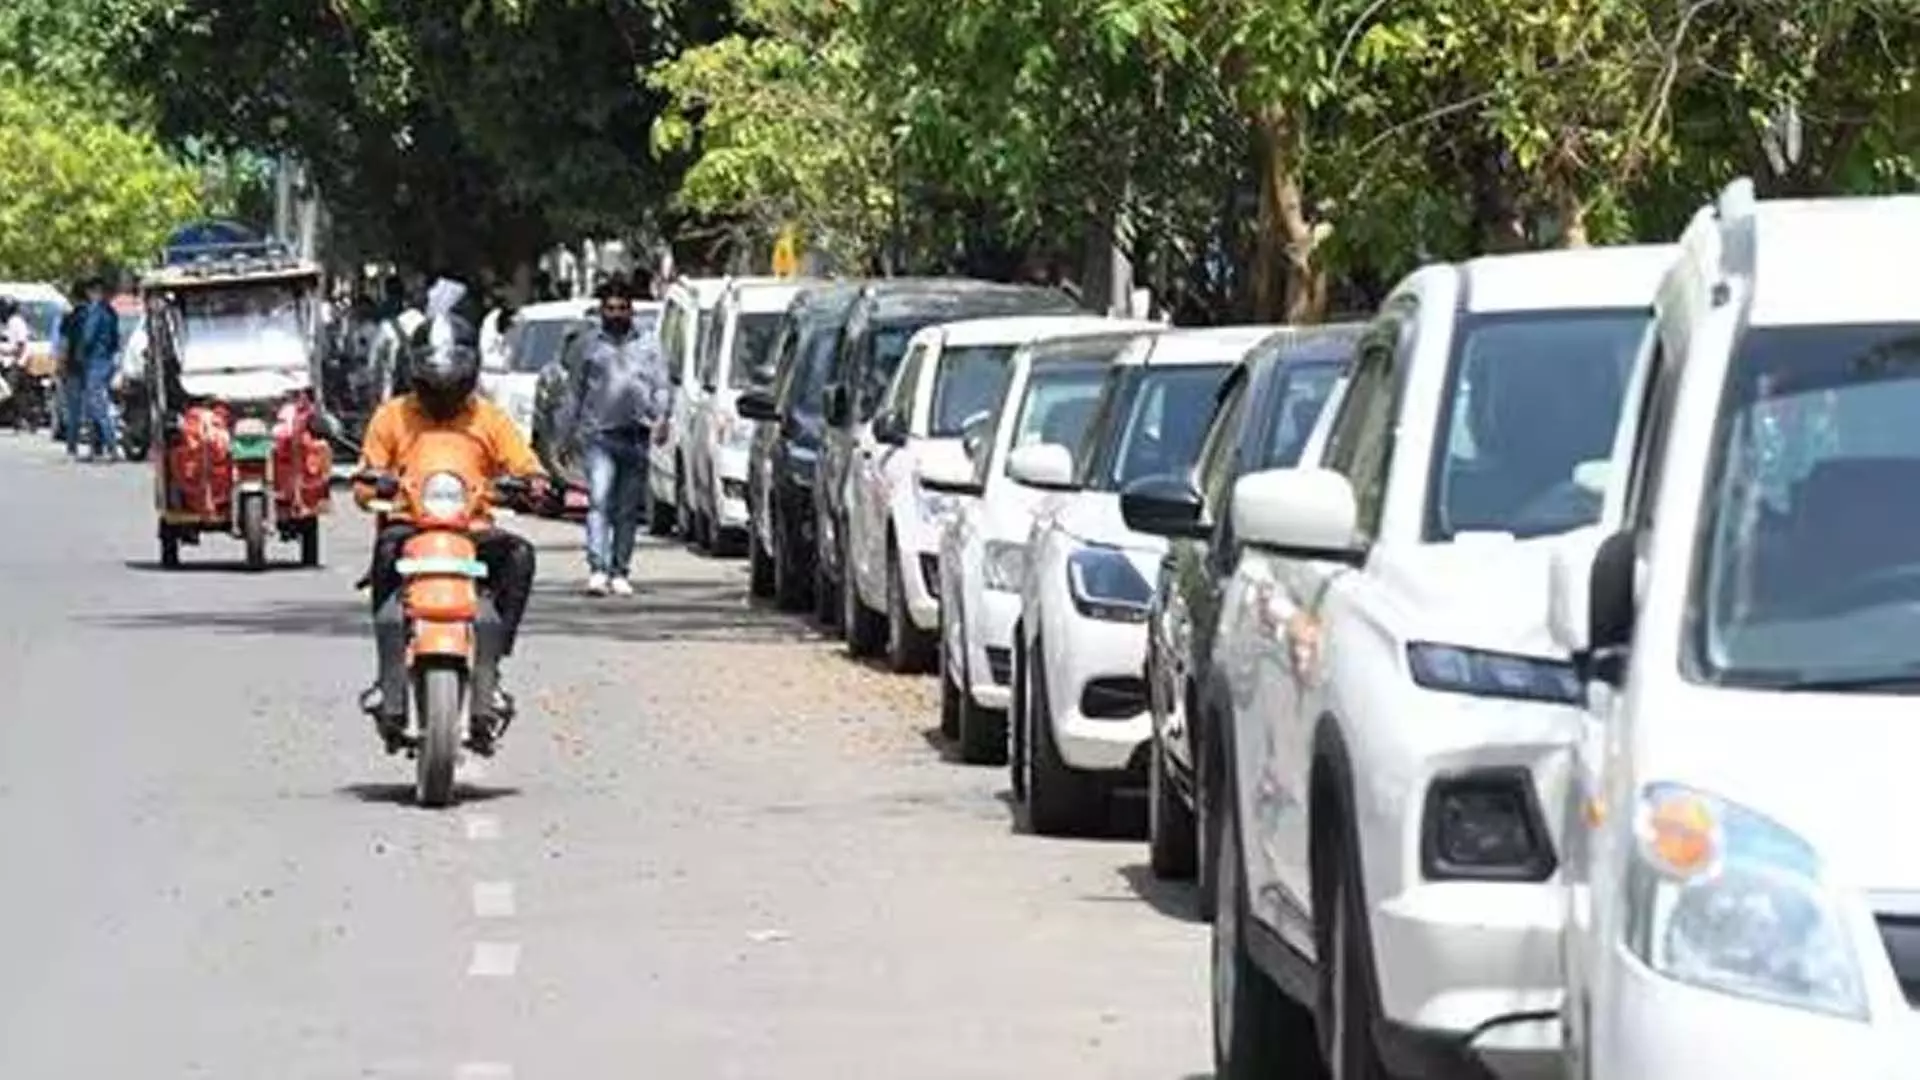 NOIDA: सेक्टर 62 में सतही पार्किंग की सुविधा नहीं